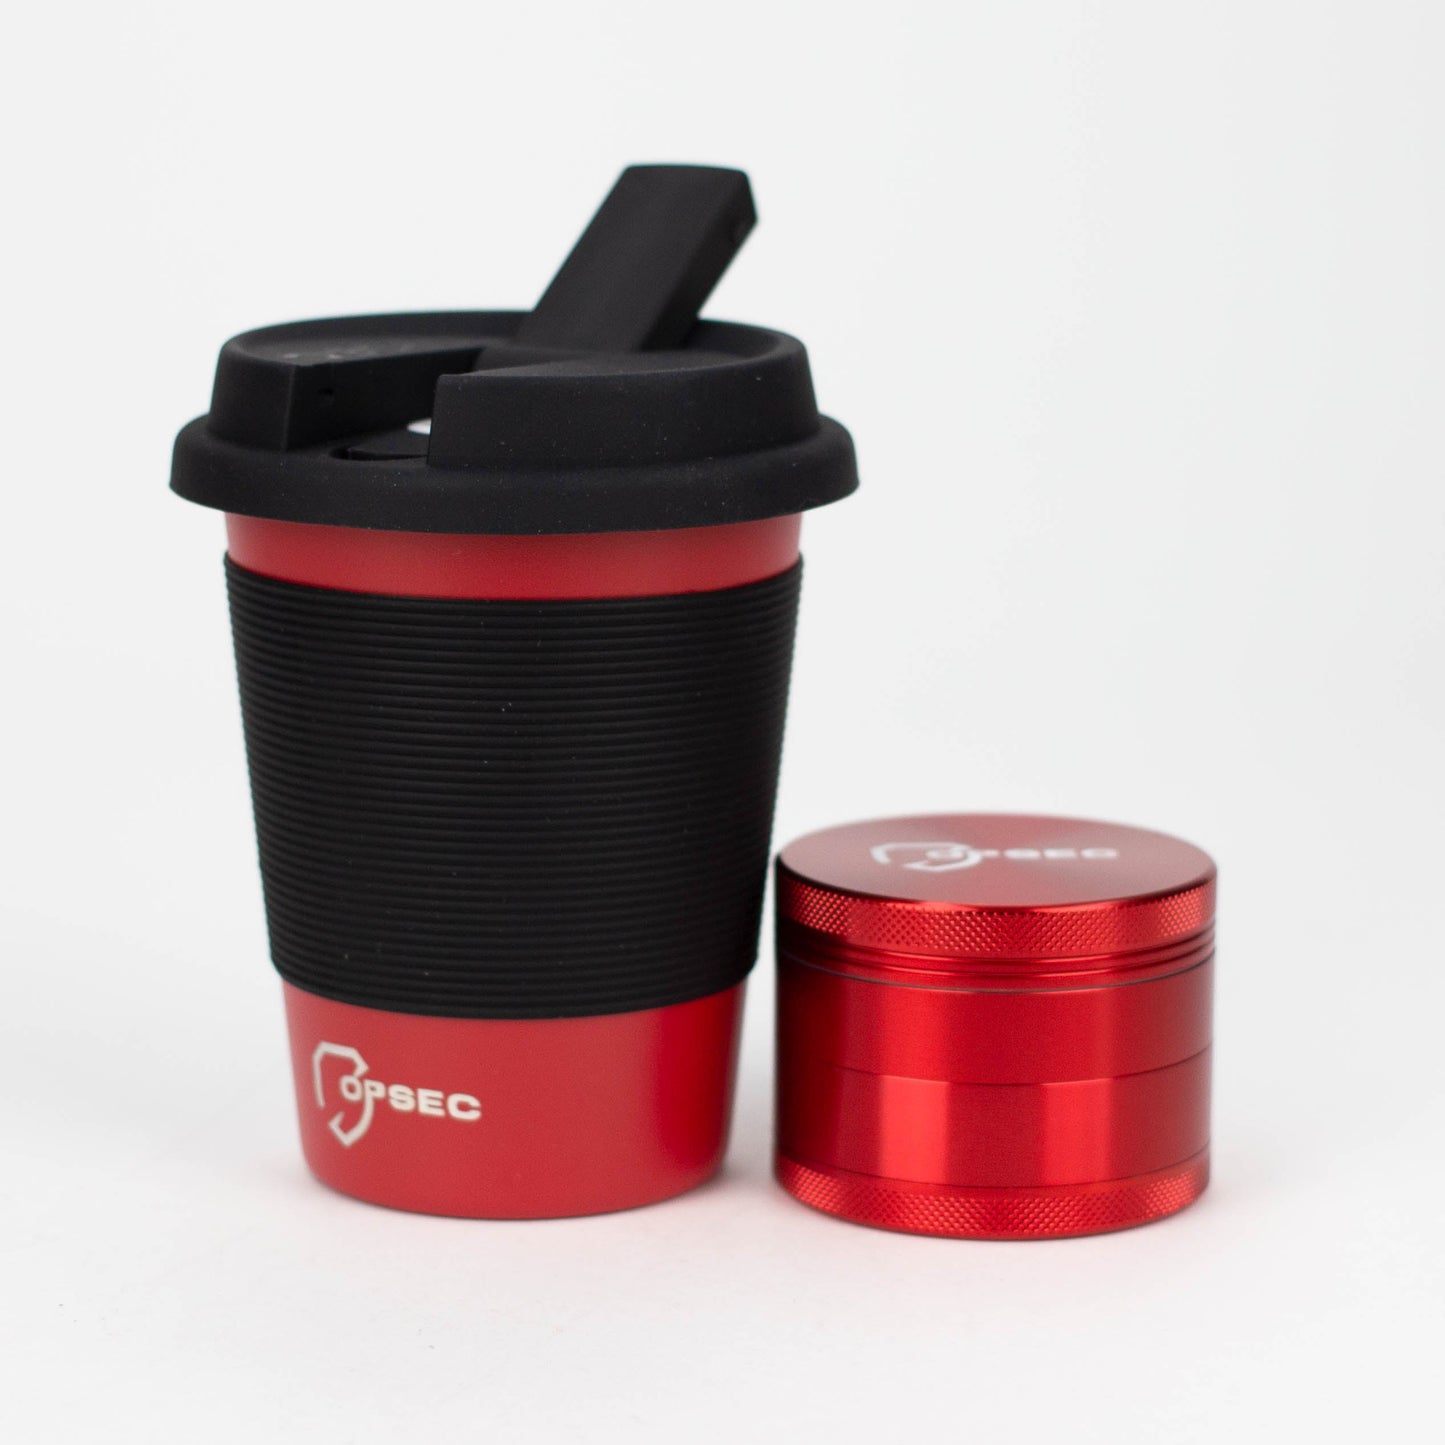 OPSEC Mug | Stealth Bubbler Bundle w/ Grinder and Extra Ceramic Bowl_10